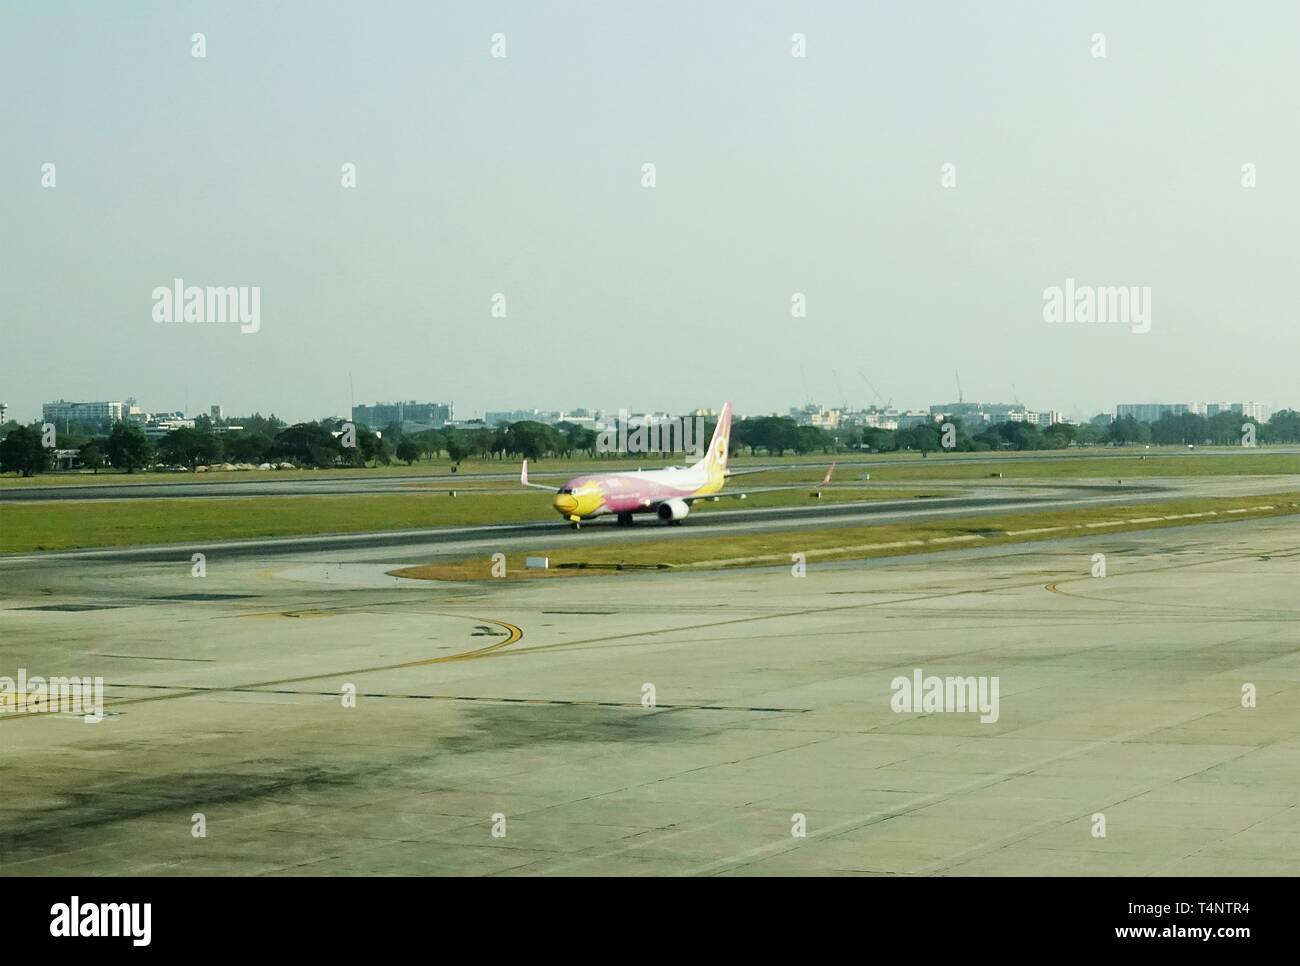 Flugzeuge der Nok Air, eine der wichtigsten Billigflieger in Asien, ist die Landung auf einem Flughafen Landebahn, nach dem Flug. Stockfoto